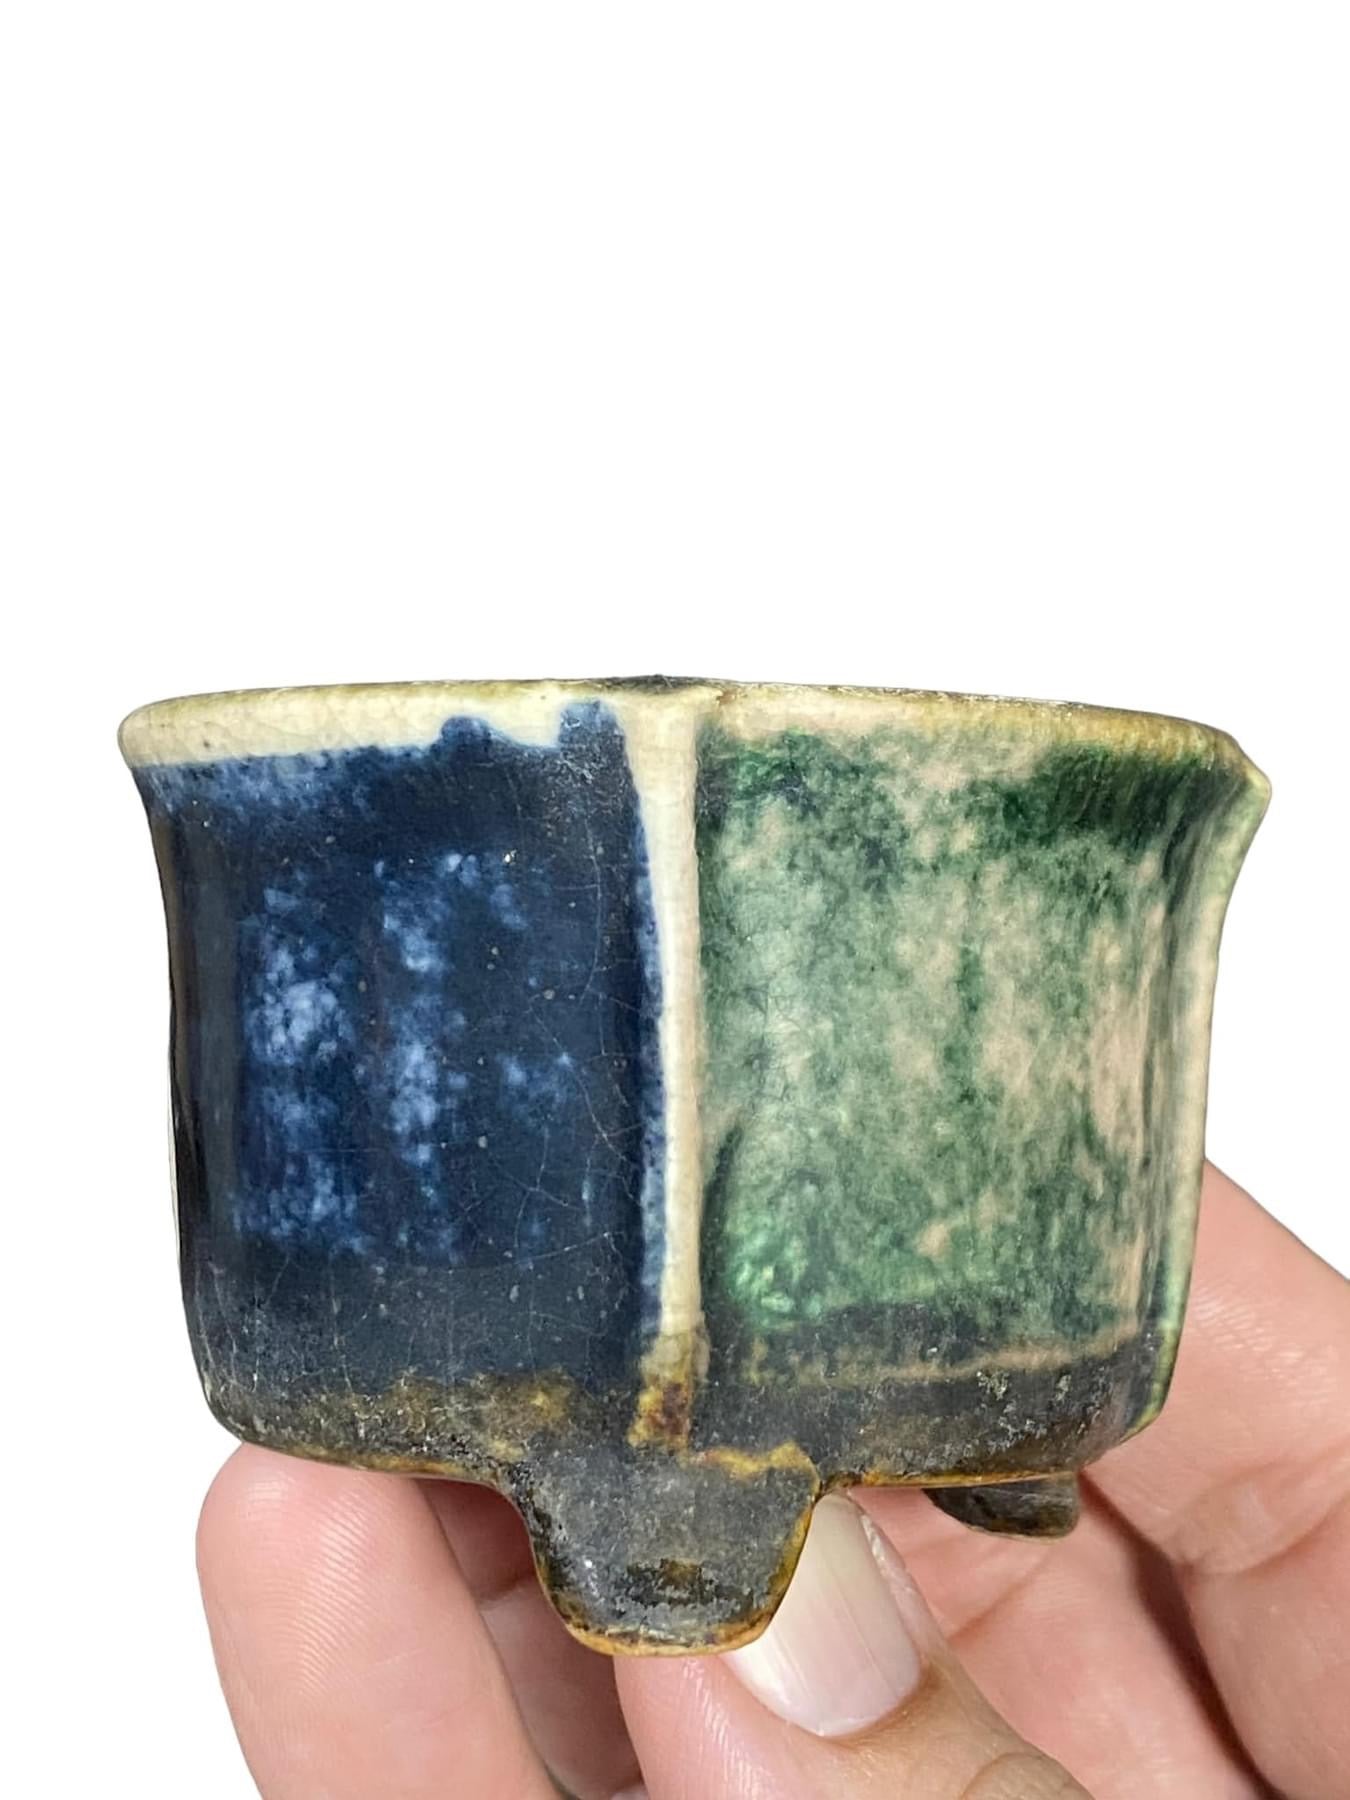 Heian Kosen - Rare and Old Glazed Bonsai Pot